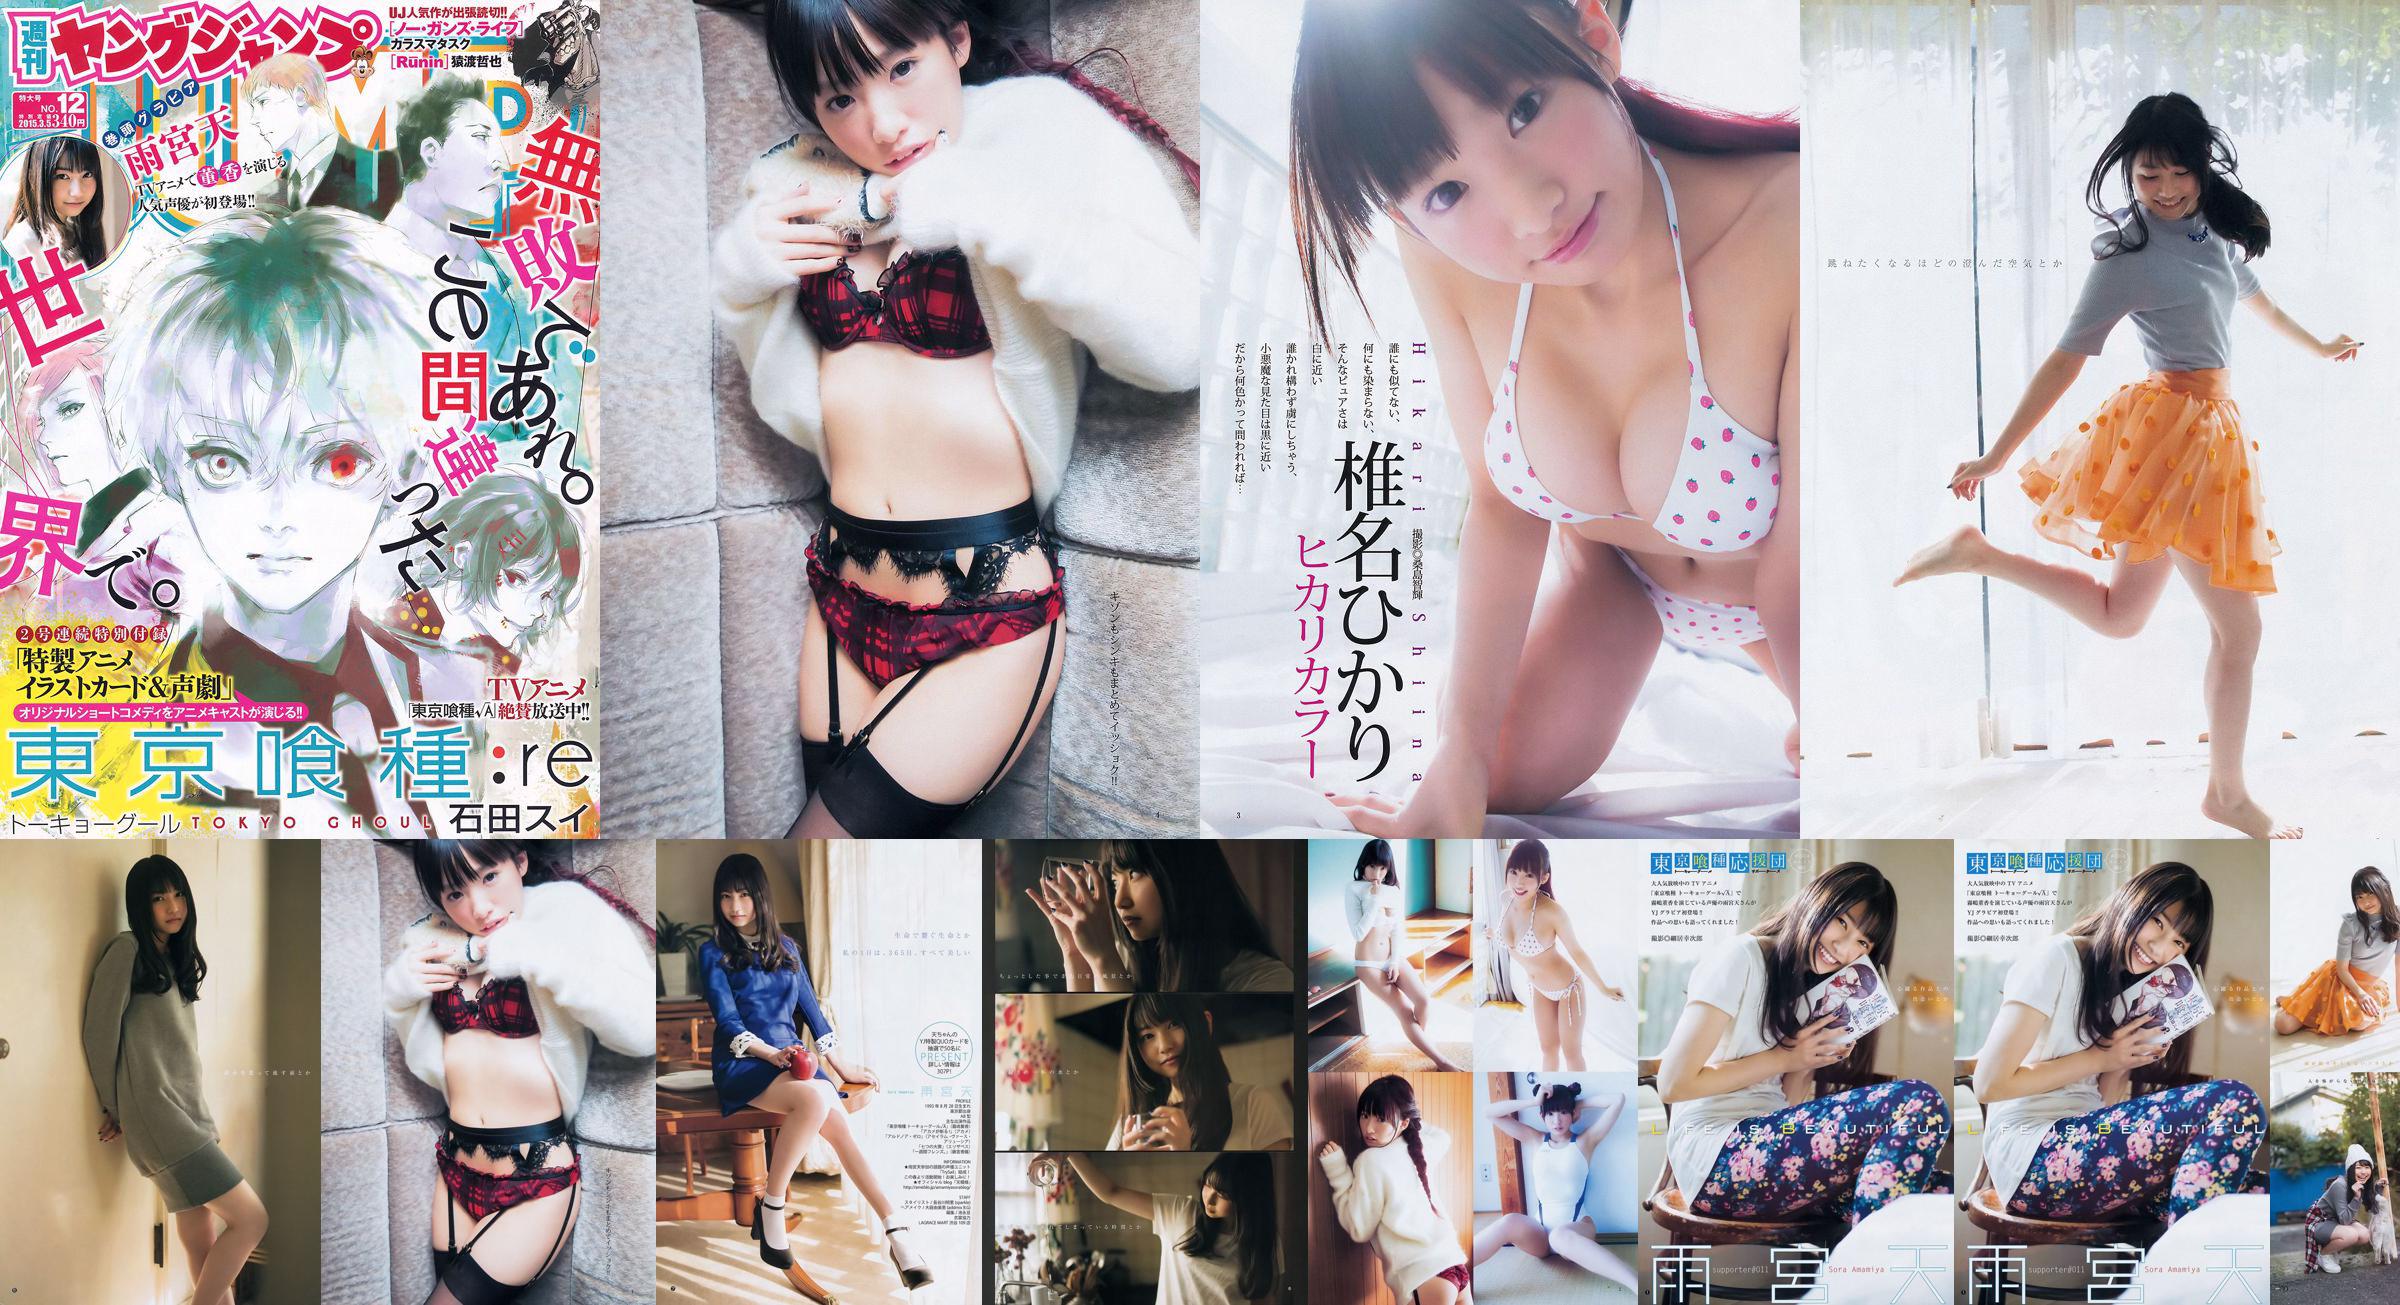 Amamiya Tian Shiina ひ か り [Weekly Young Jump] Tạp chí ảnh số 12 năm 2015 No.f359a9 Trang 4